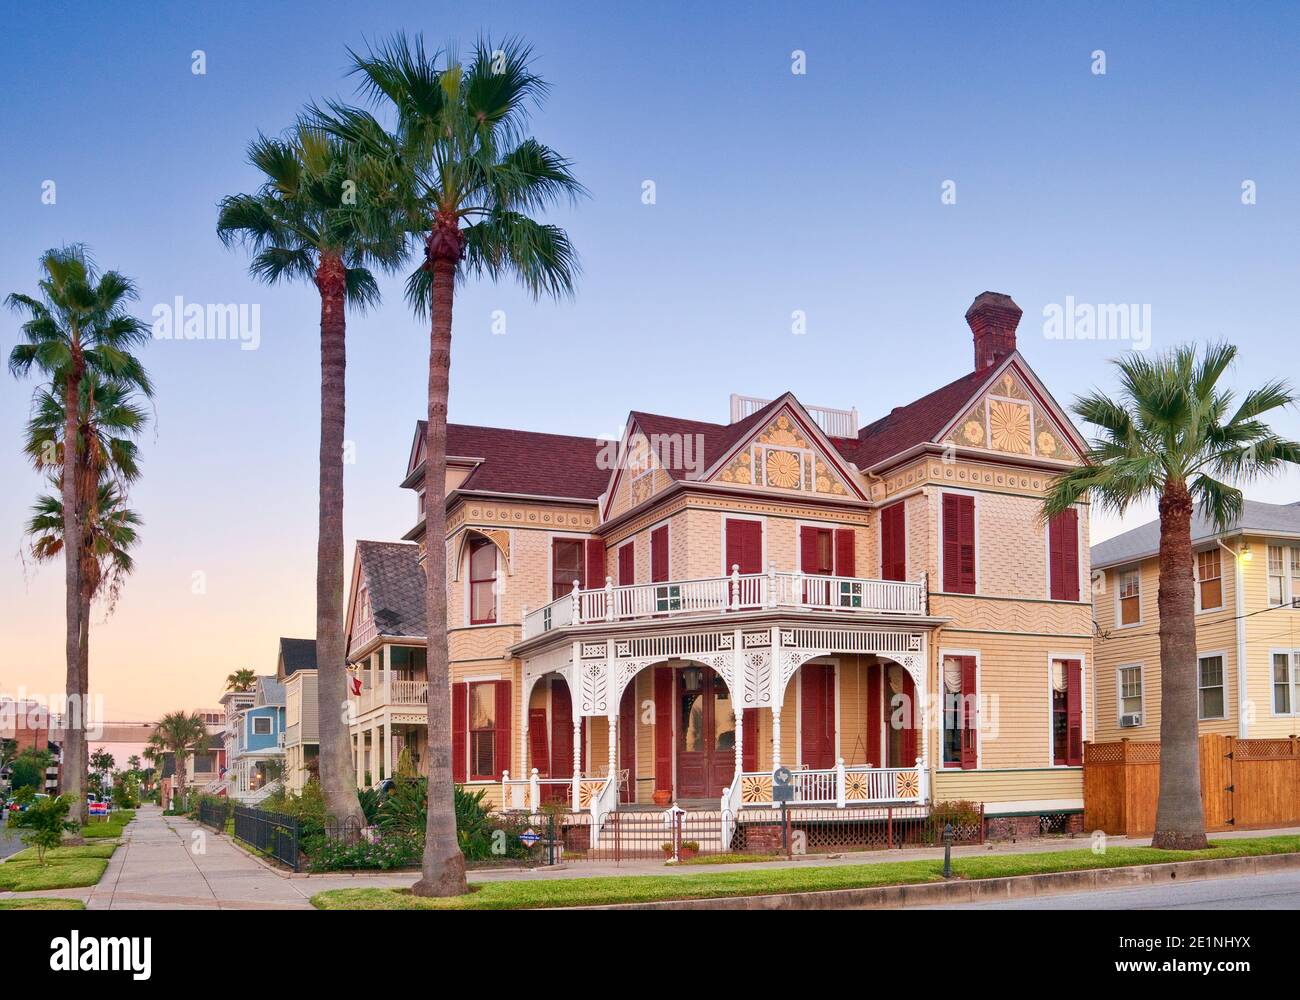 Frederick Beissner House, construit en 1898, style Eastlake de l'architecture victorienne, sur ball Avenue dans East End Historic District, Galveston, Texas, États-Unis Banque D'Images